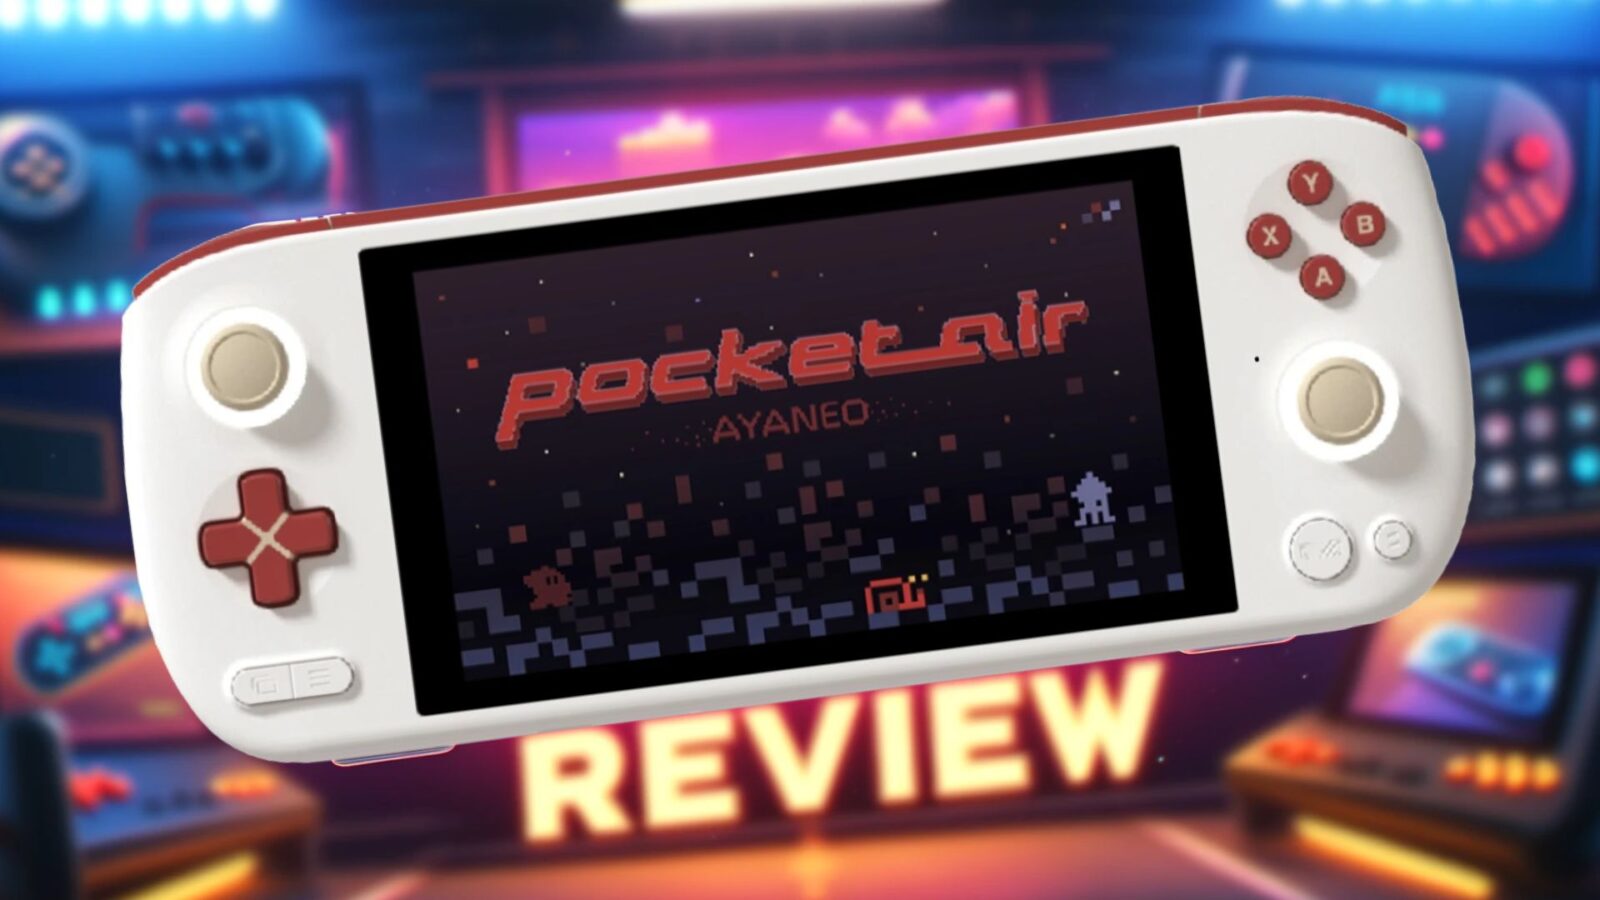 AYA NEO Pocket AIR review